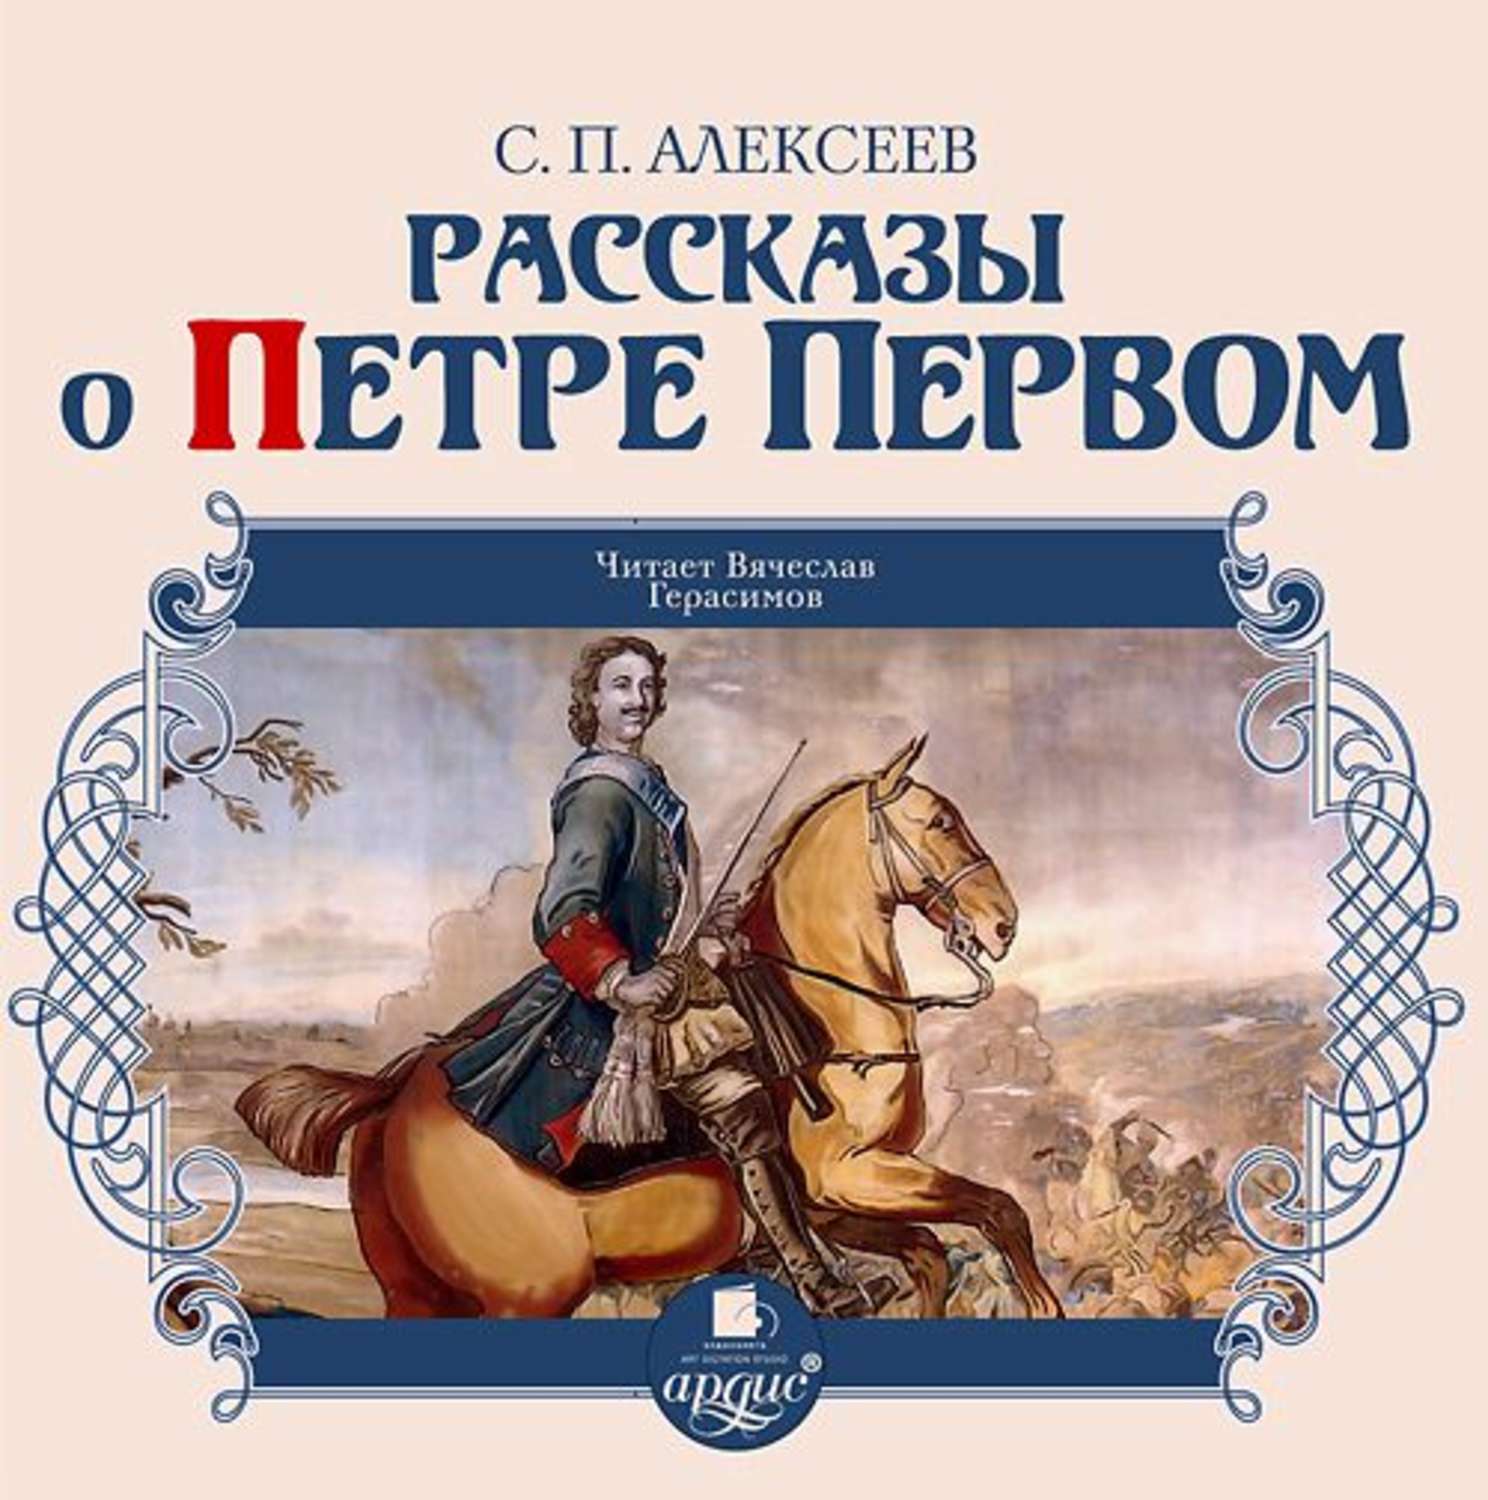 Аудиокнига знаток. Книги о Петре первом Алексеева для детей.